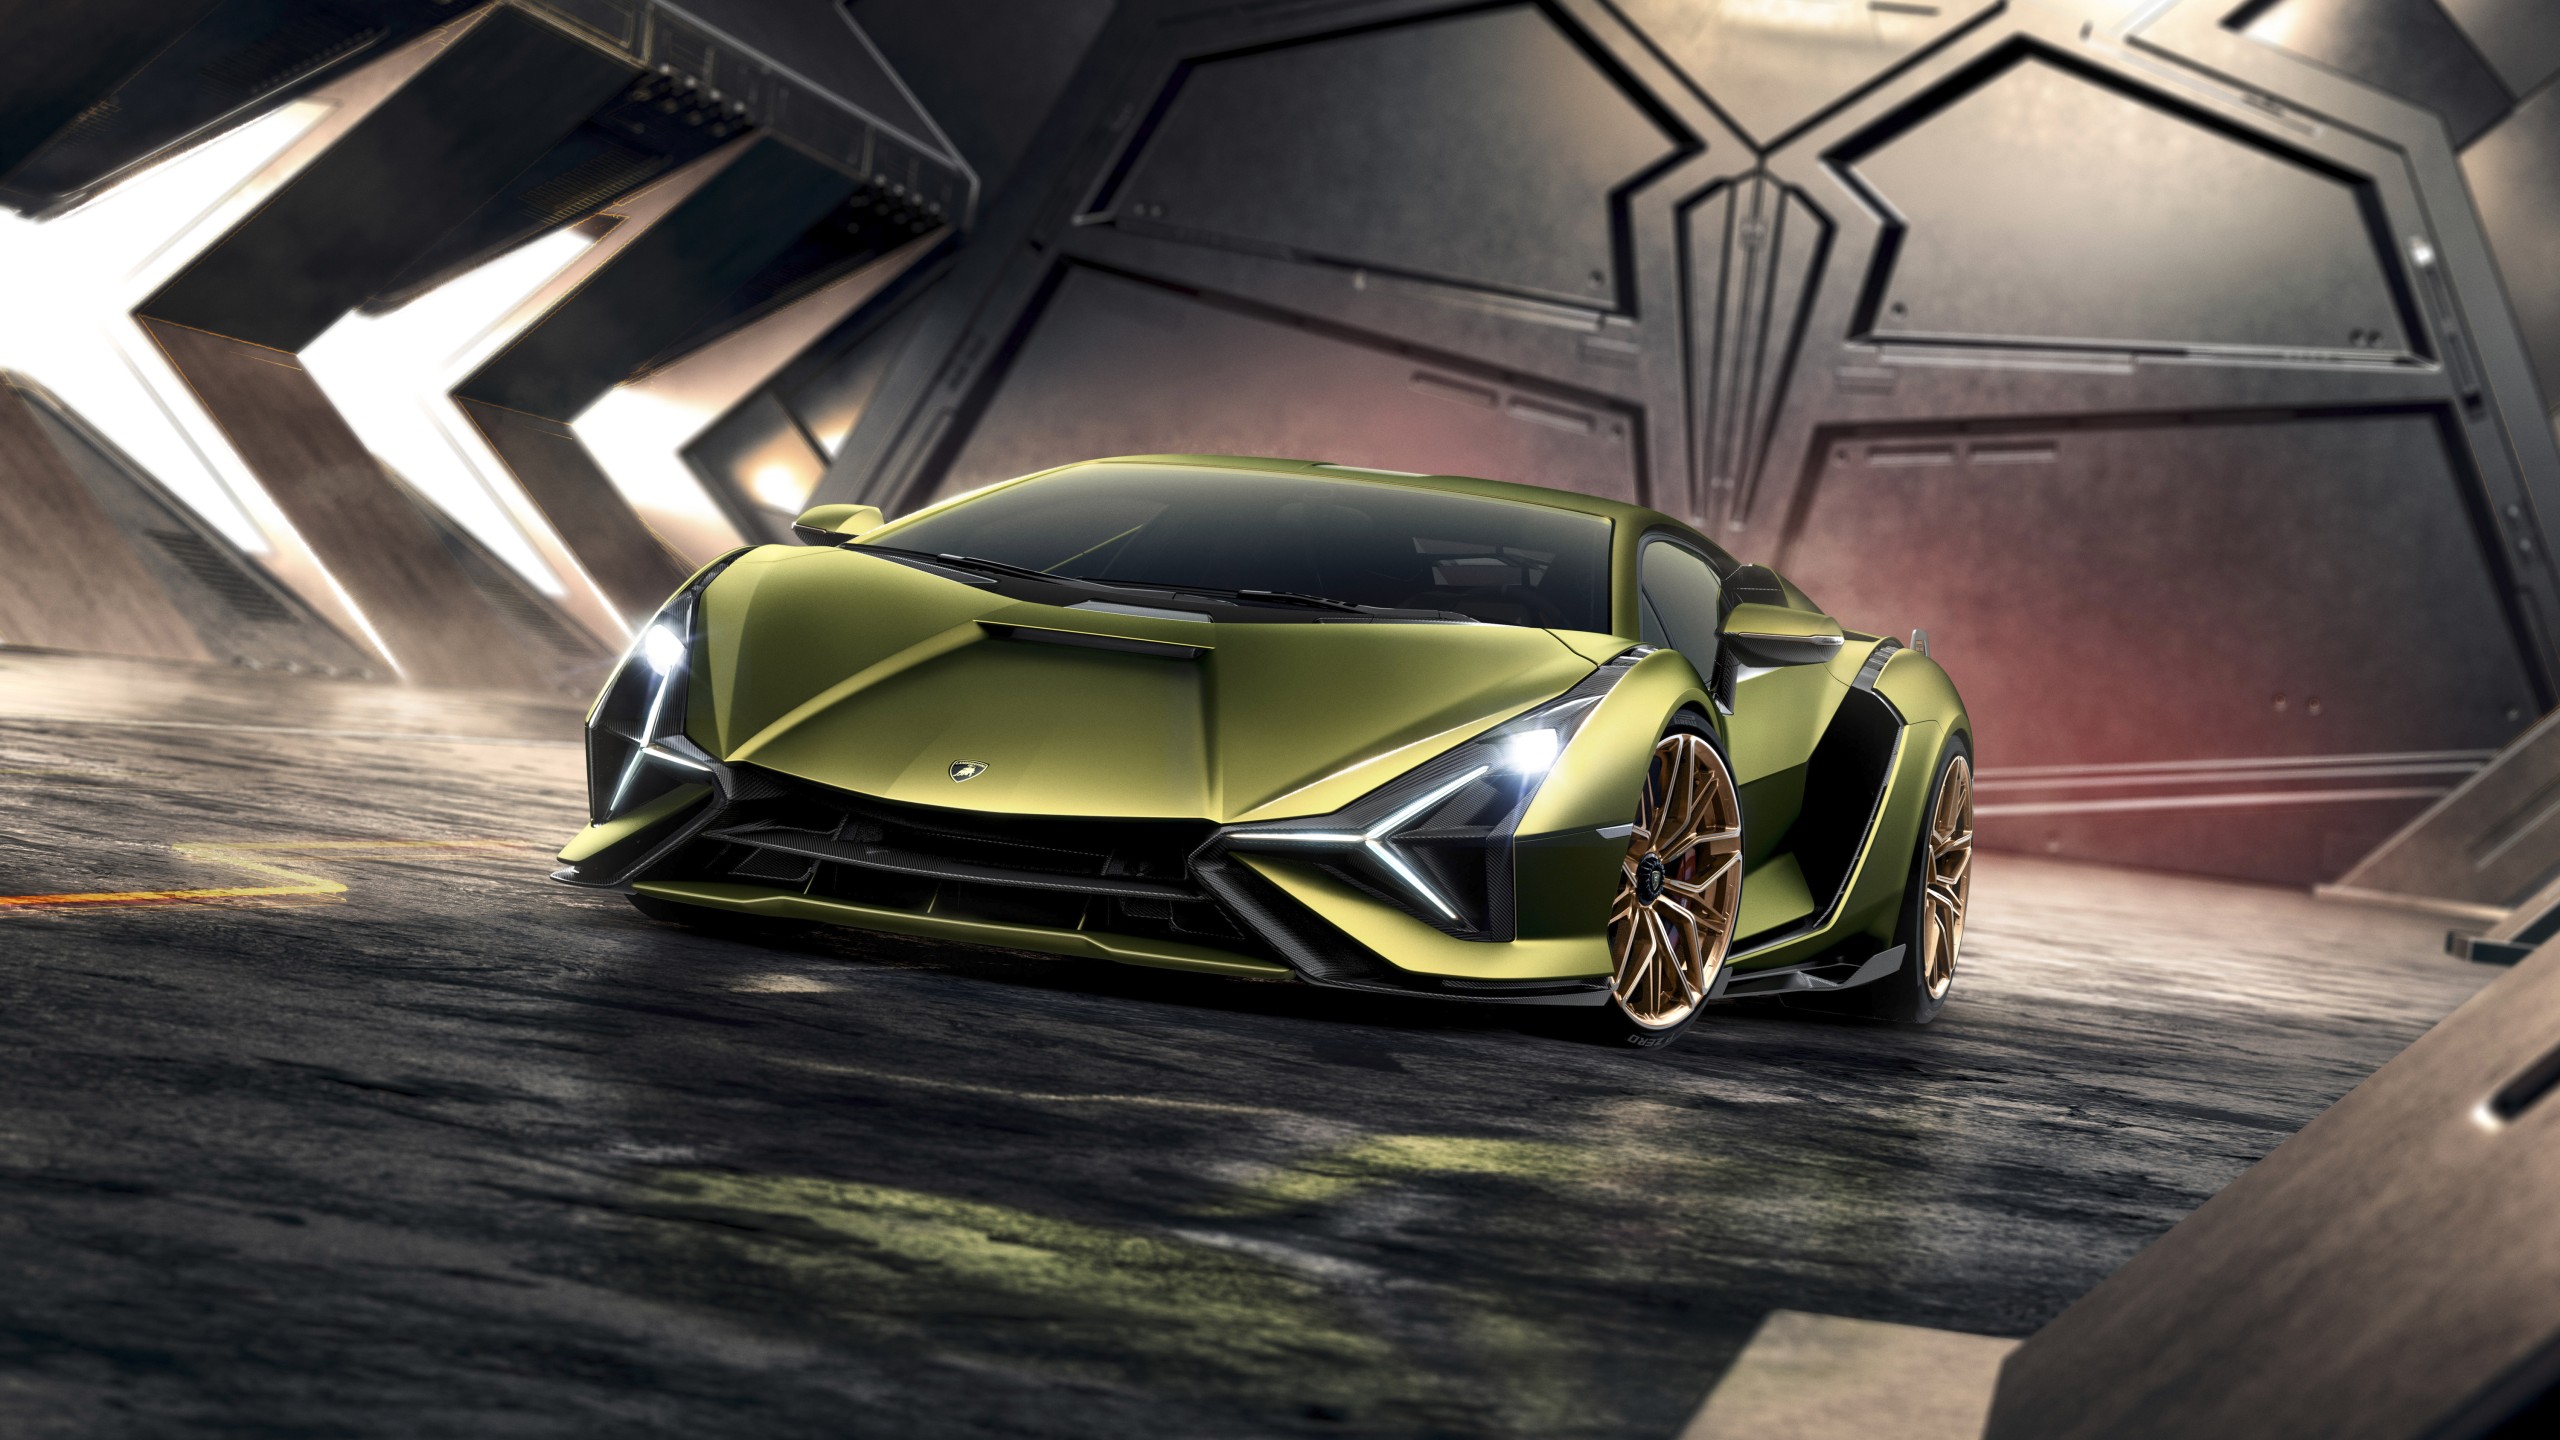 Lamborghini Sian 2019 4k 13 Wallpaper Hd Car Wallpapers Id 13146